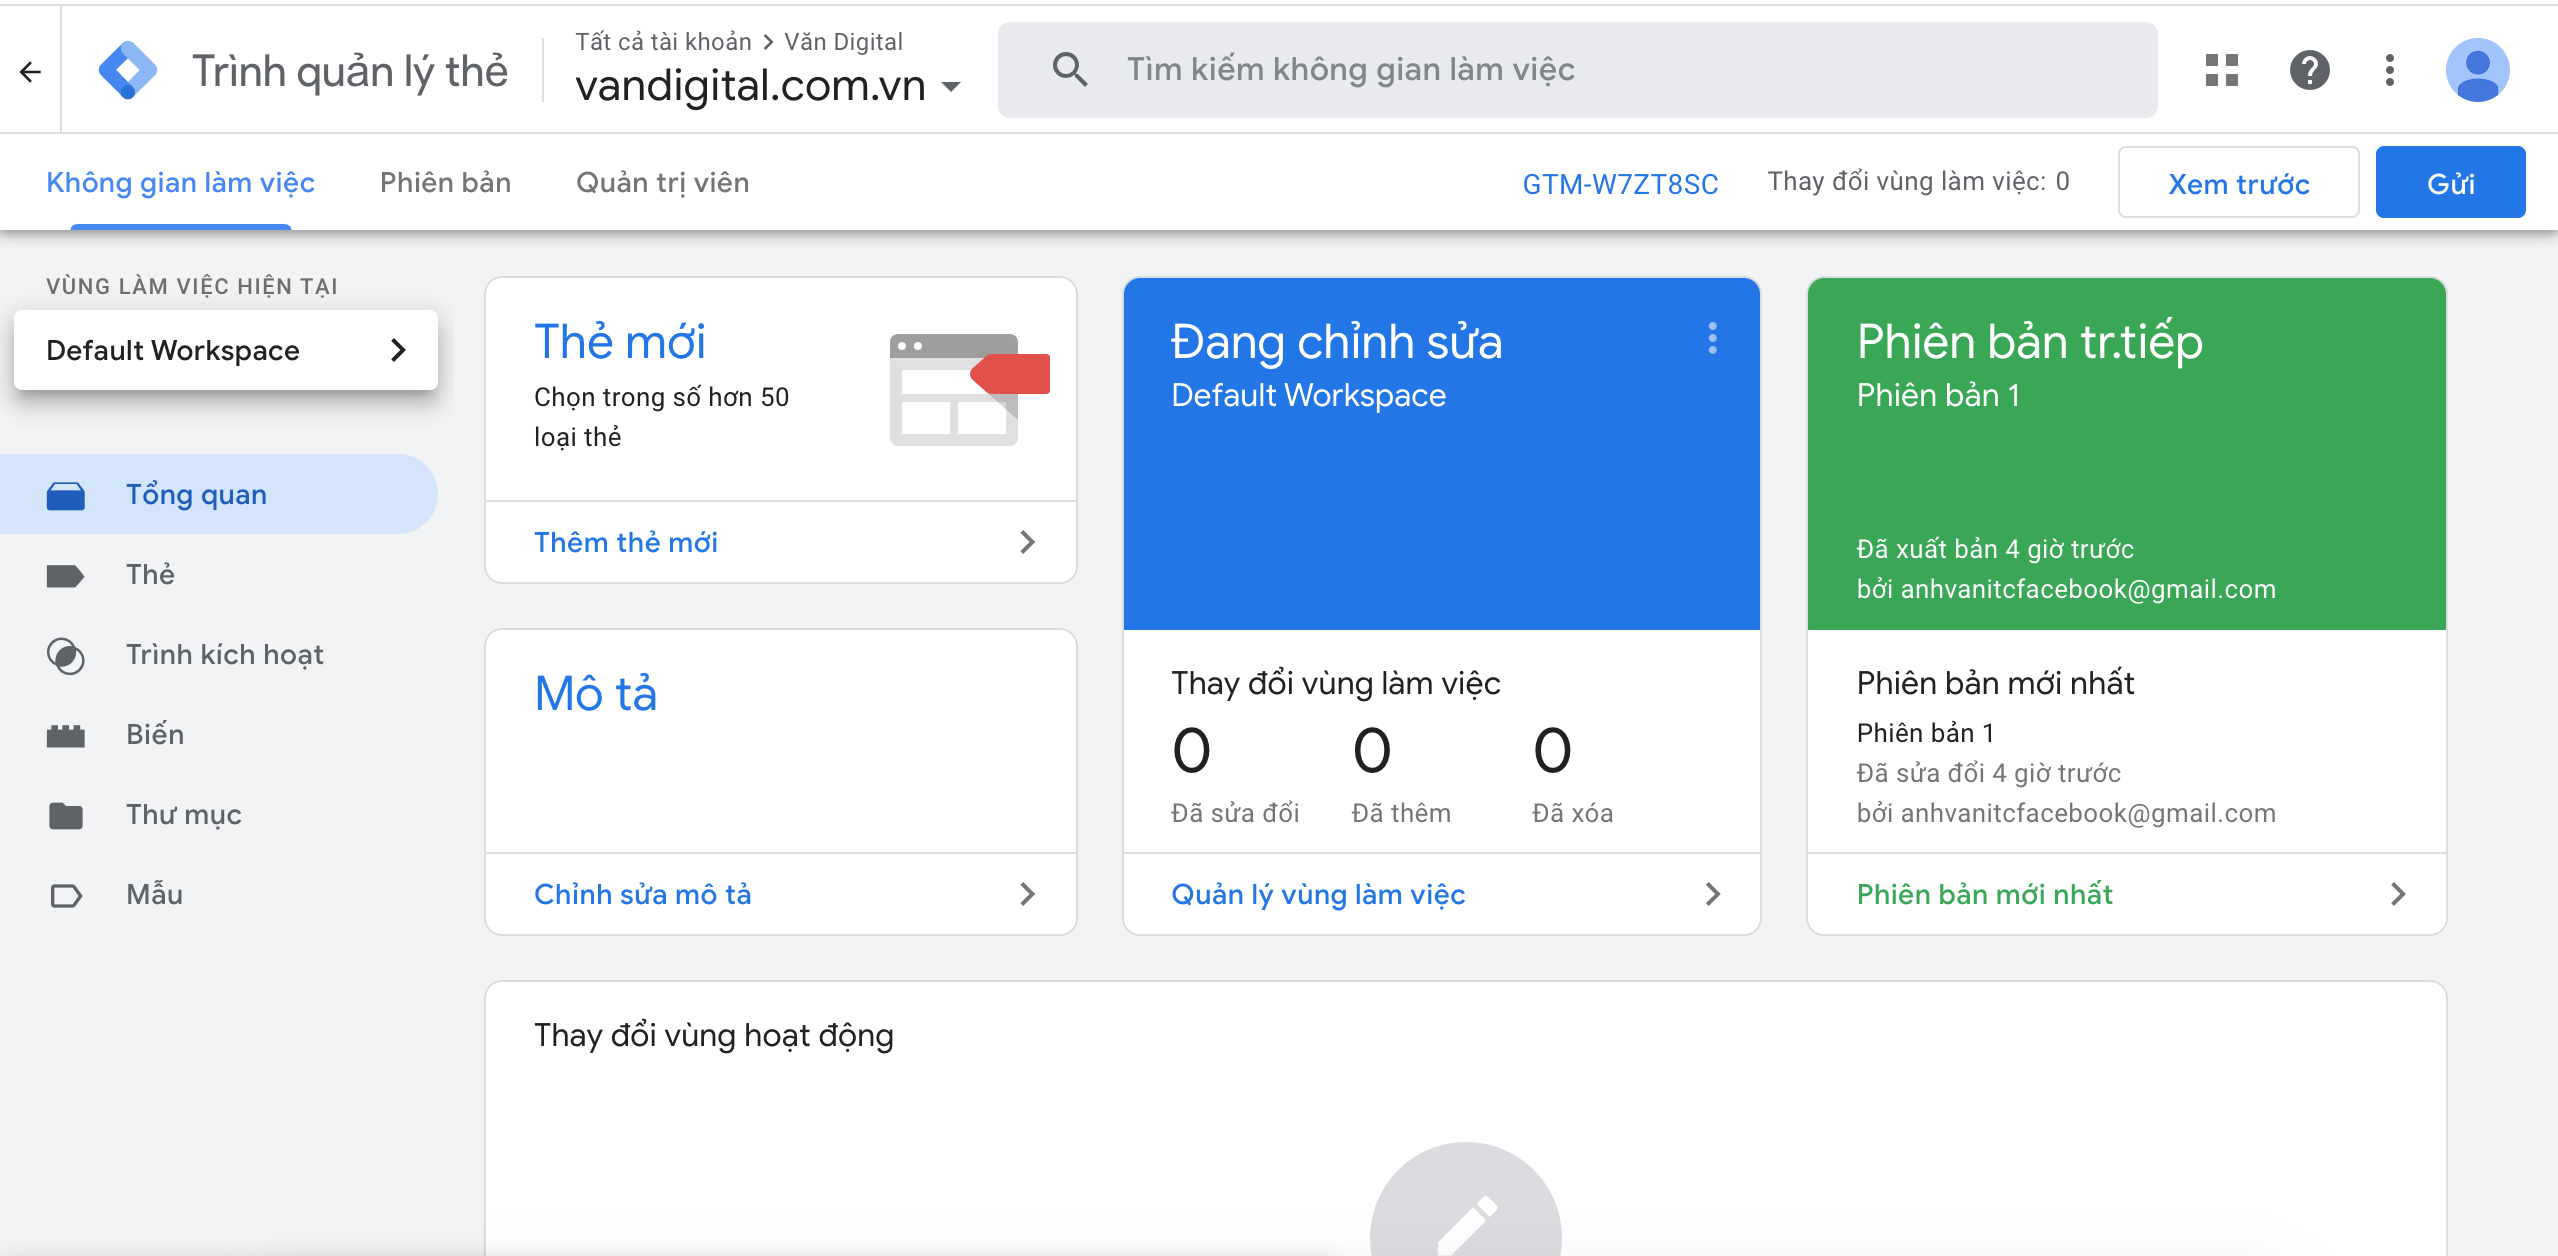 Hướng dẫn cách cài đặt Google Tag Manager cho website 2